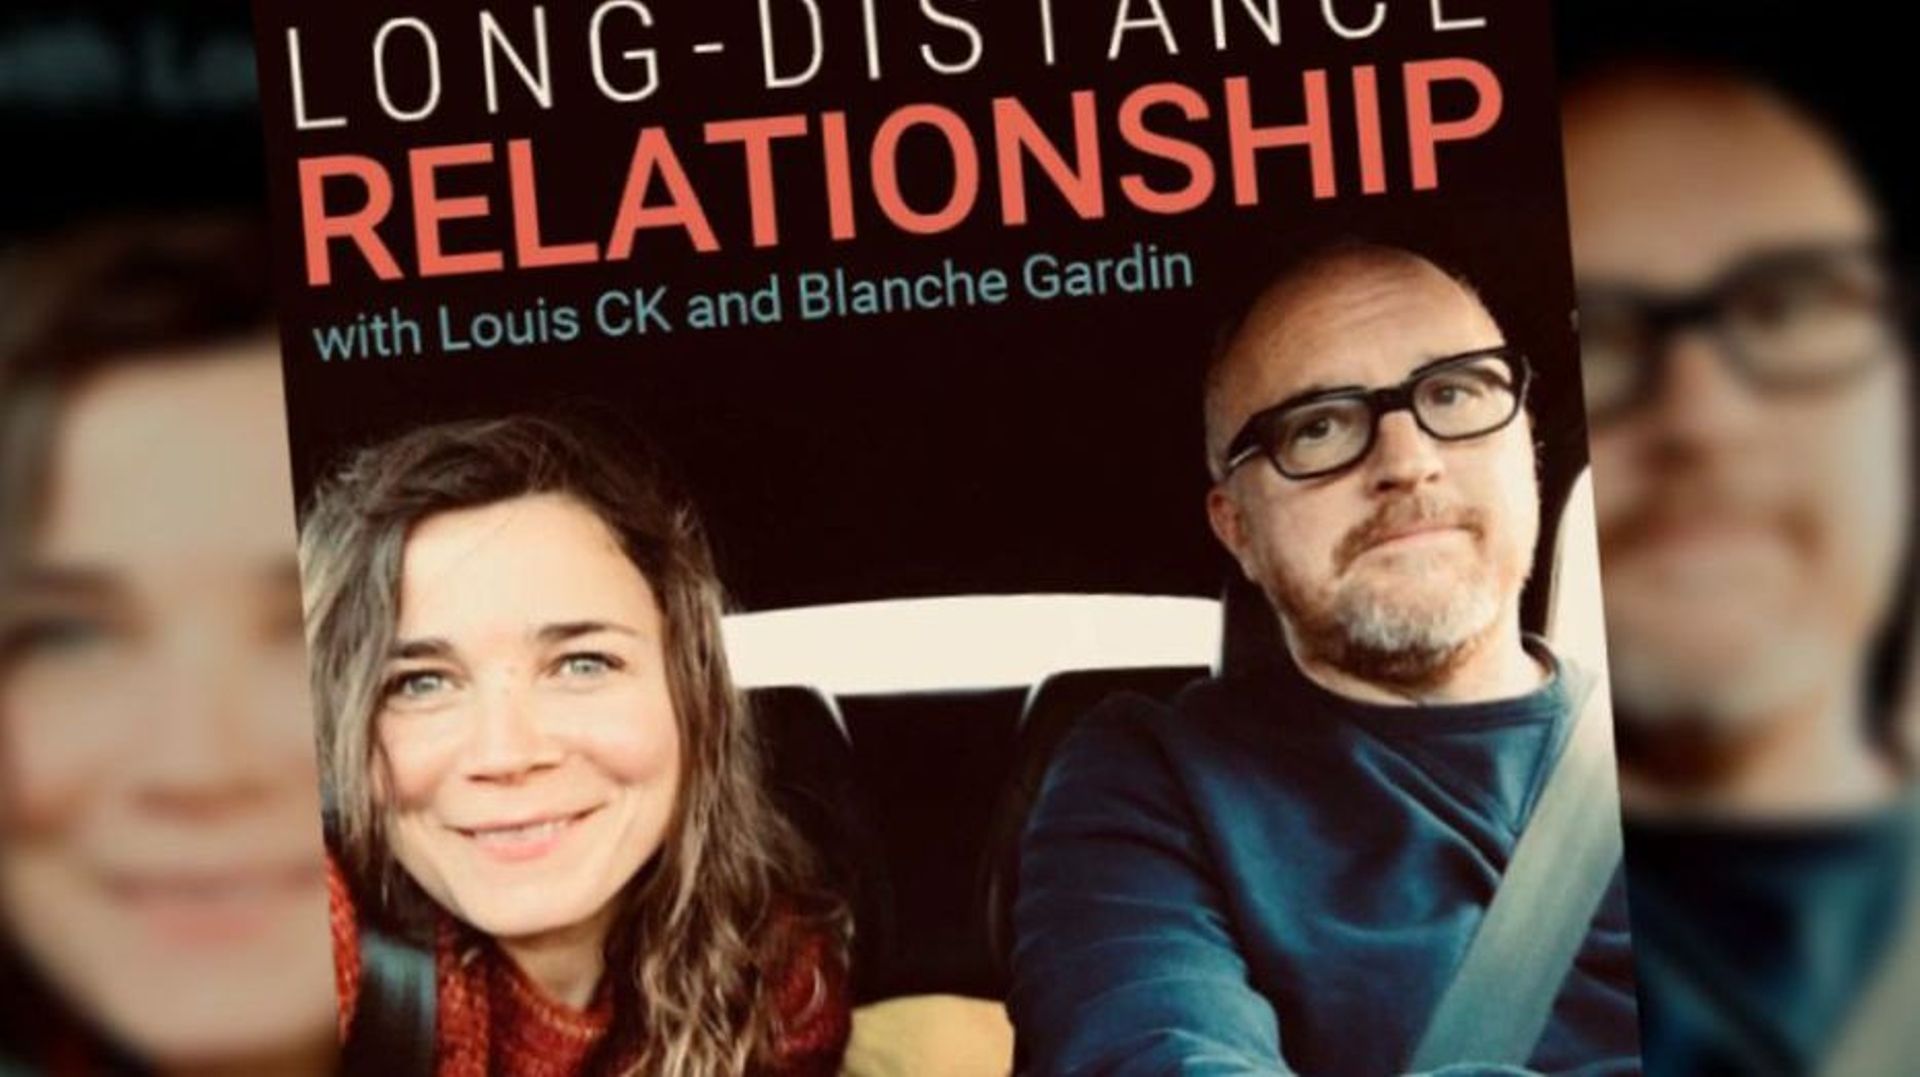 "Long-distance relationship", le nouveau podcast de Blanche Gardin et son compagnon Louic C.K.